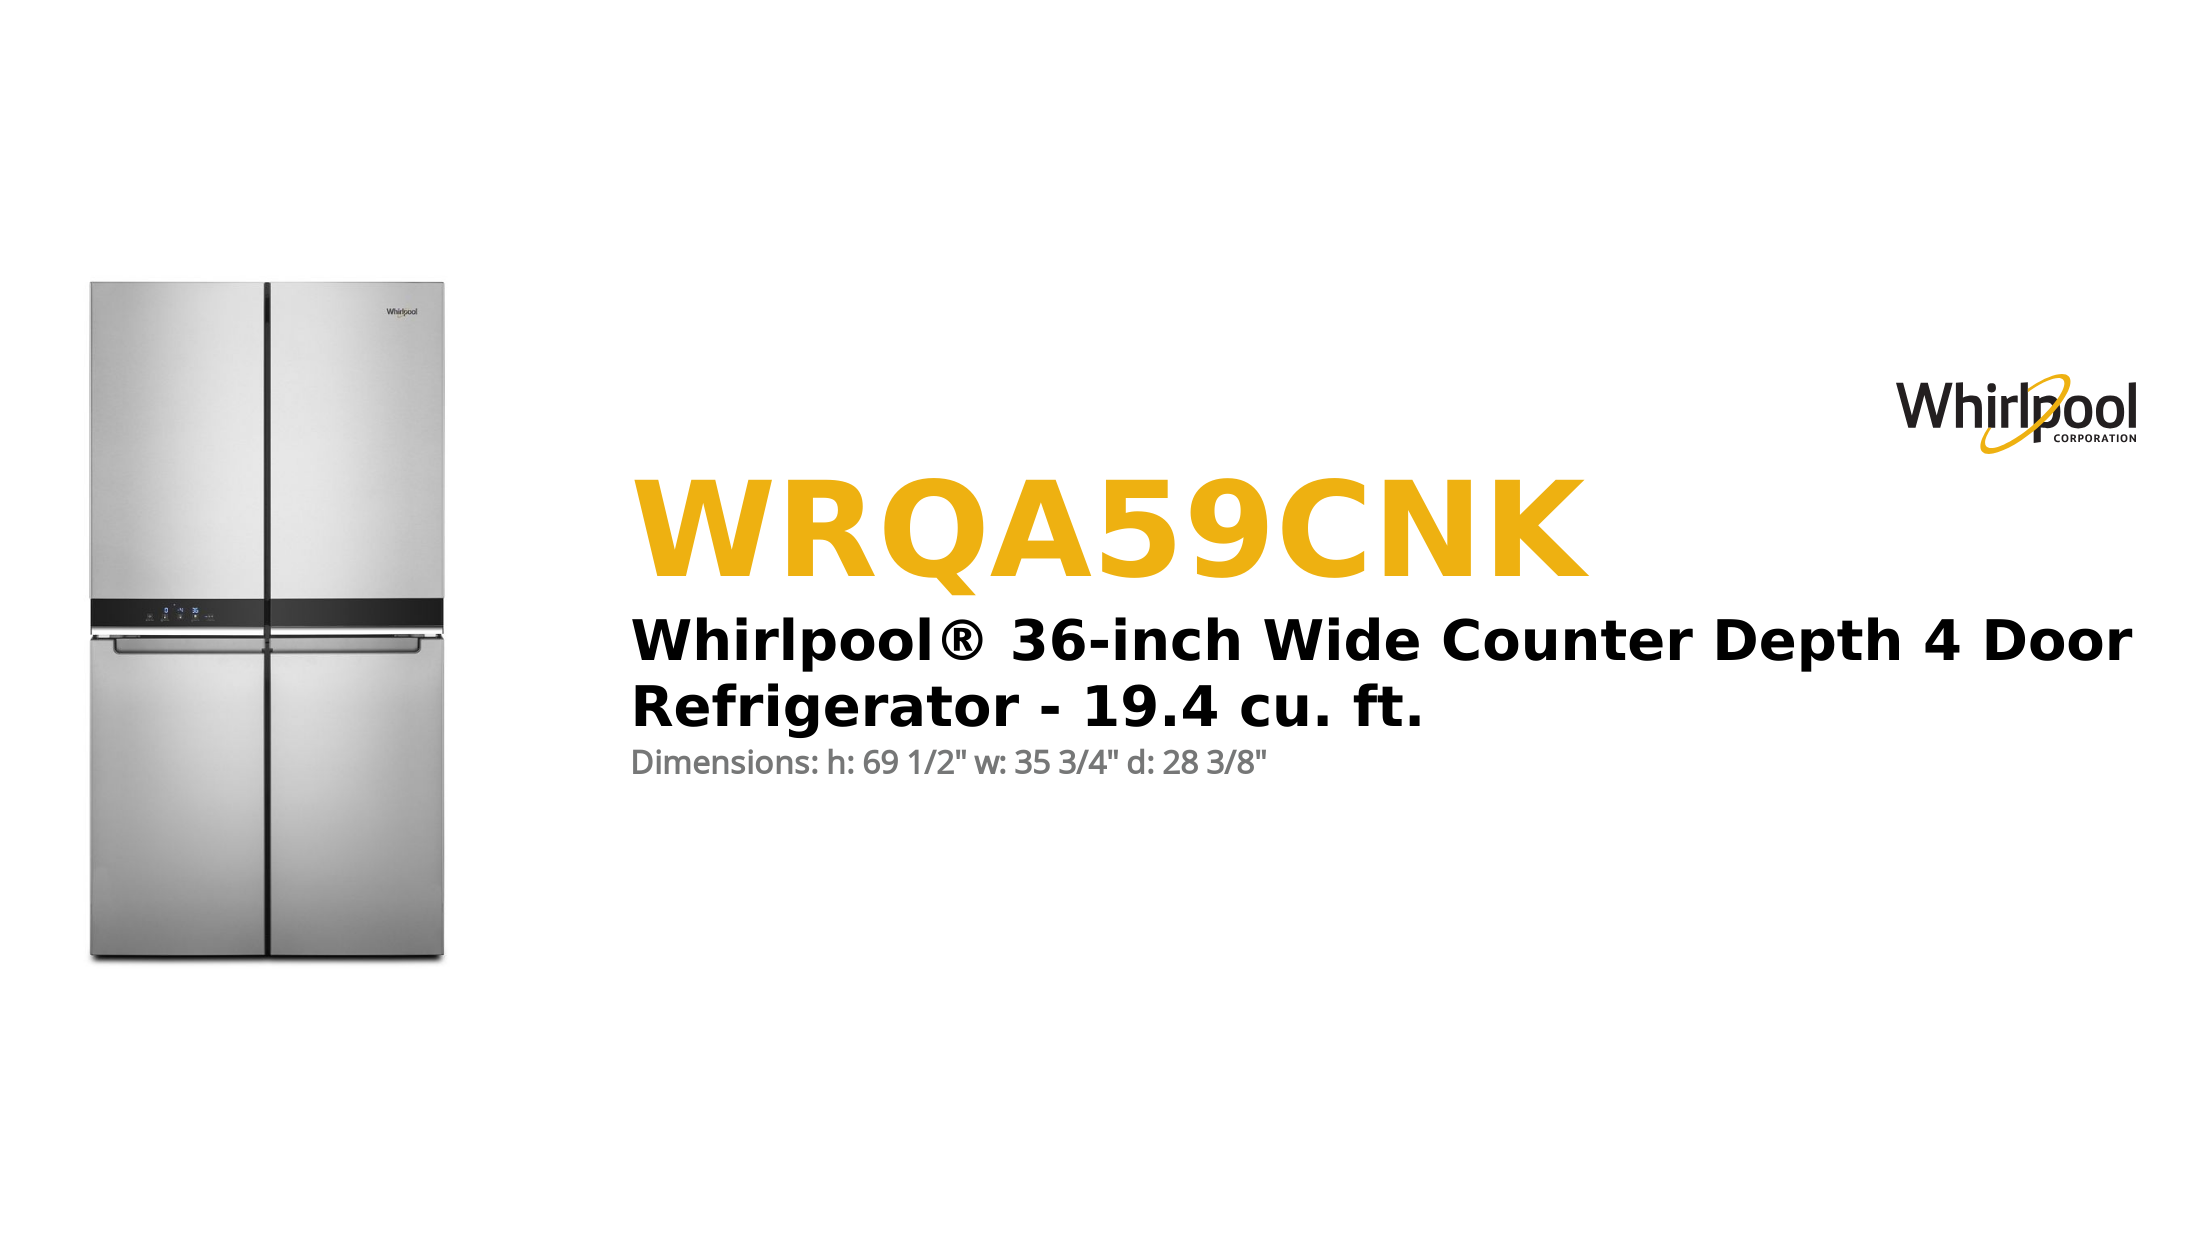 Whirlpool® 36-inch Wide Counter Depth 4 Door Refrigerator - 19.4 cu. ft.